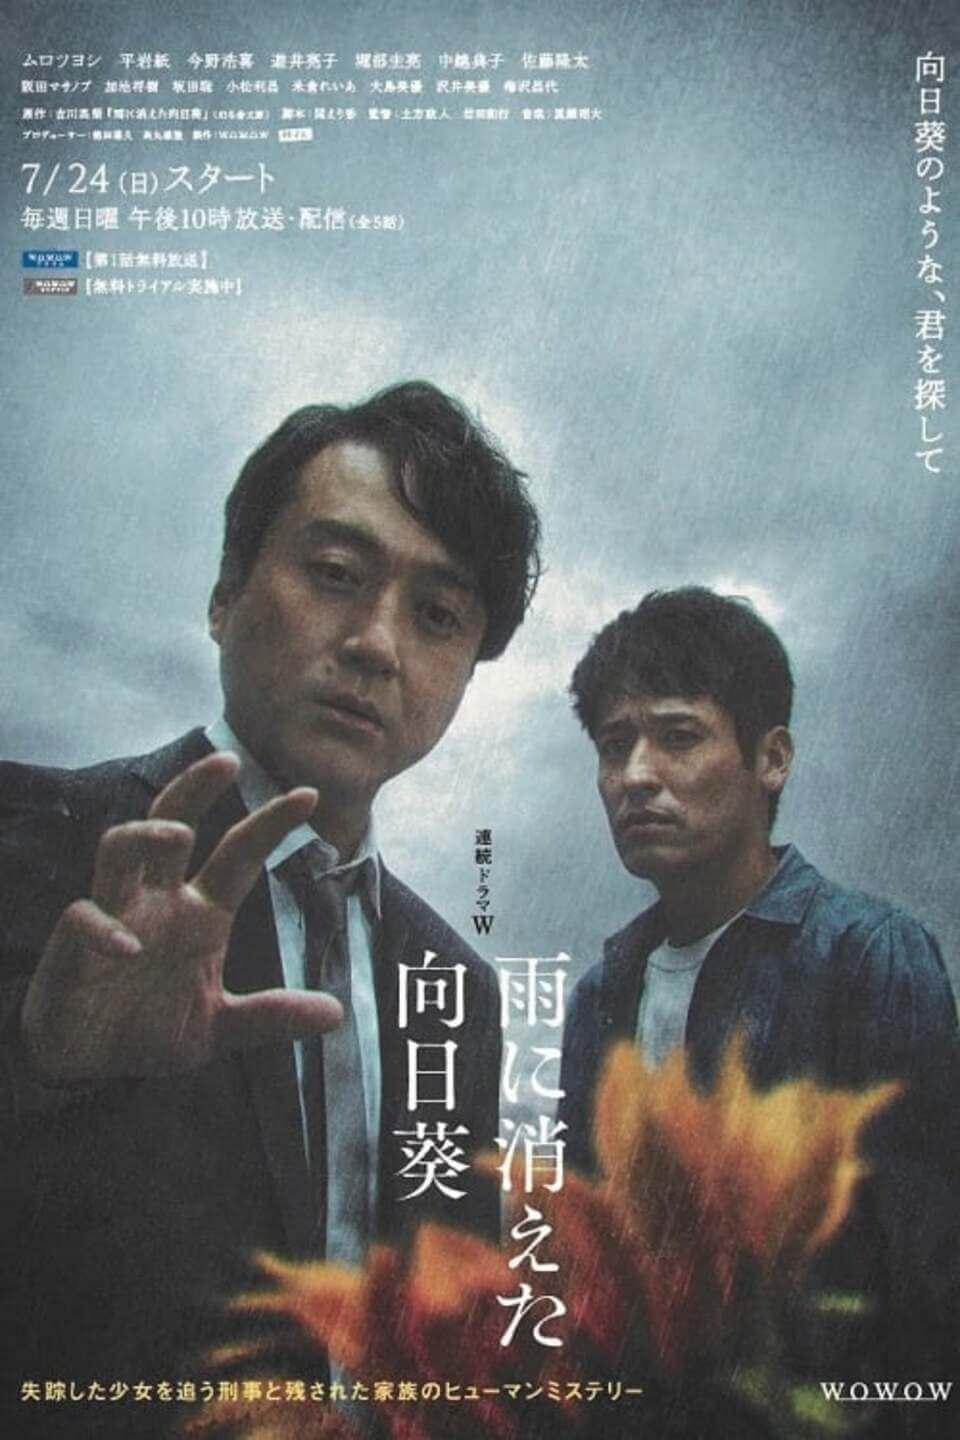 TV ratings for Ame Ni Kieta Himawari (雨に消えた向日葵) in South Korea. Netflix TV series